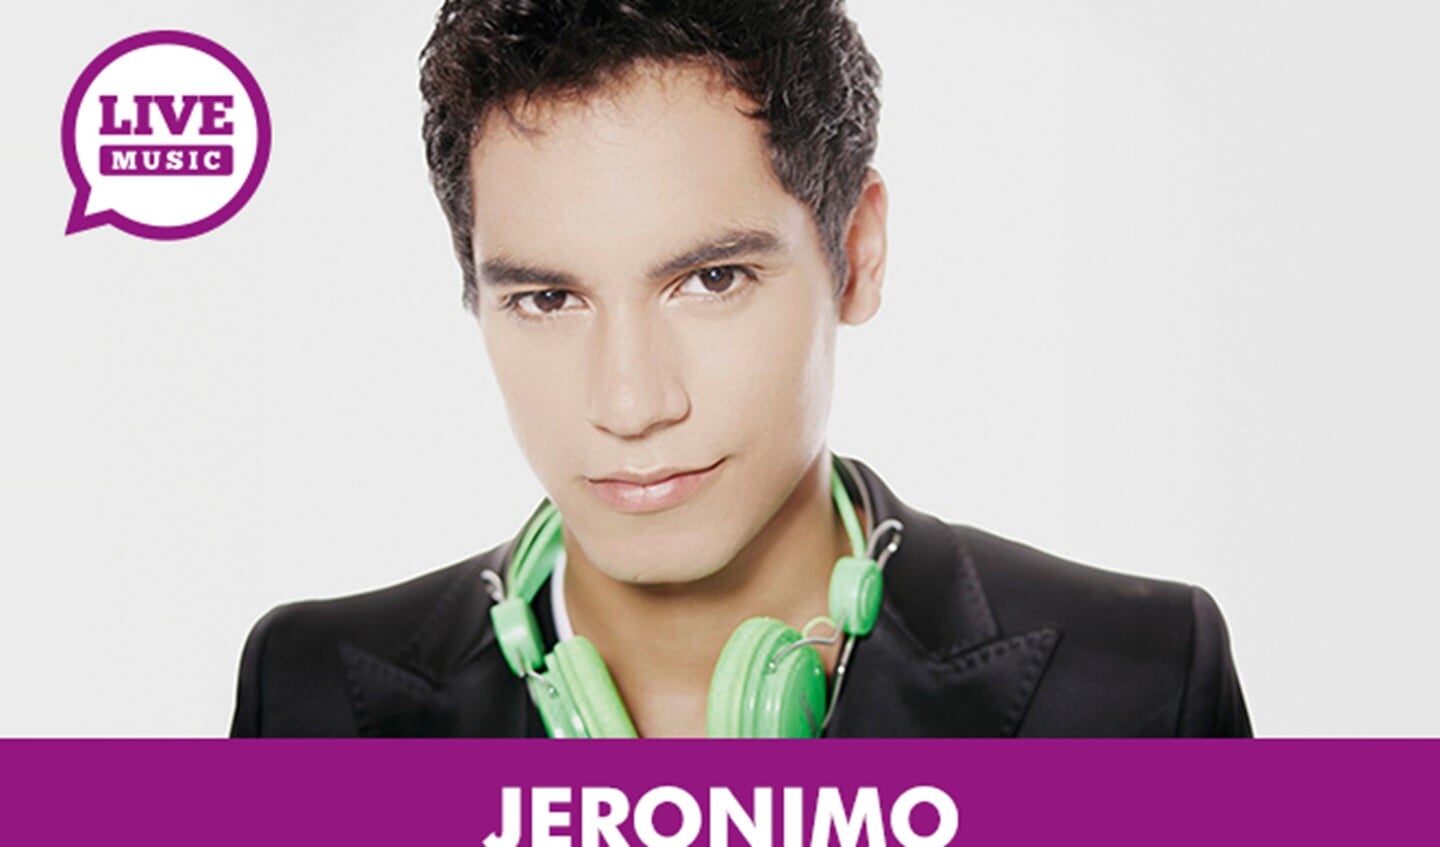 Jeronimo is zanger, acteur en presentator
